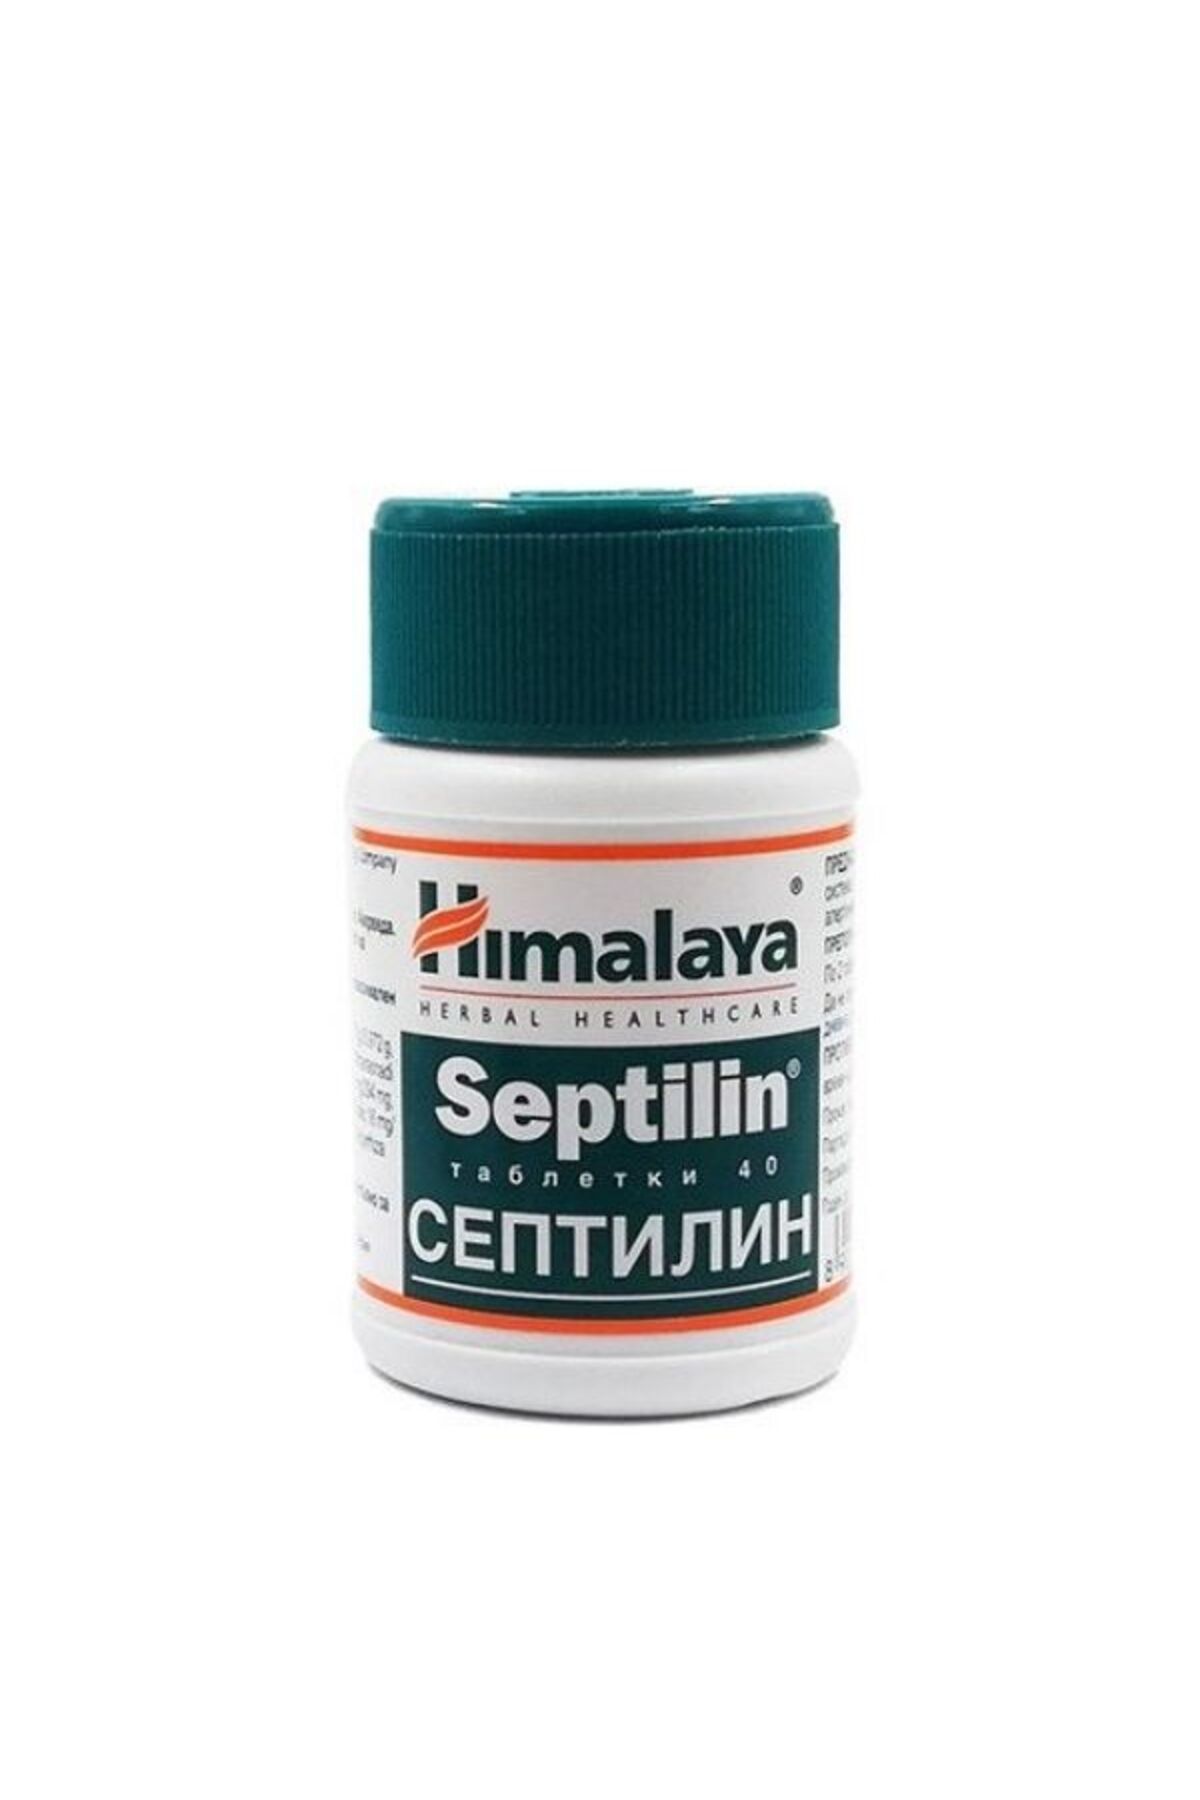 Himalaya Septilin 40 Tablet